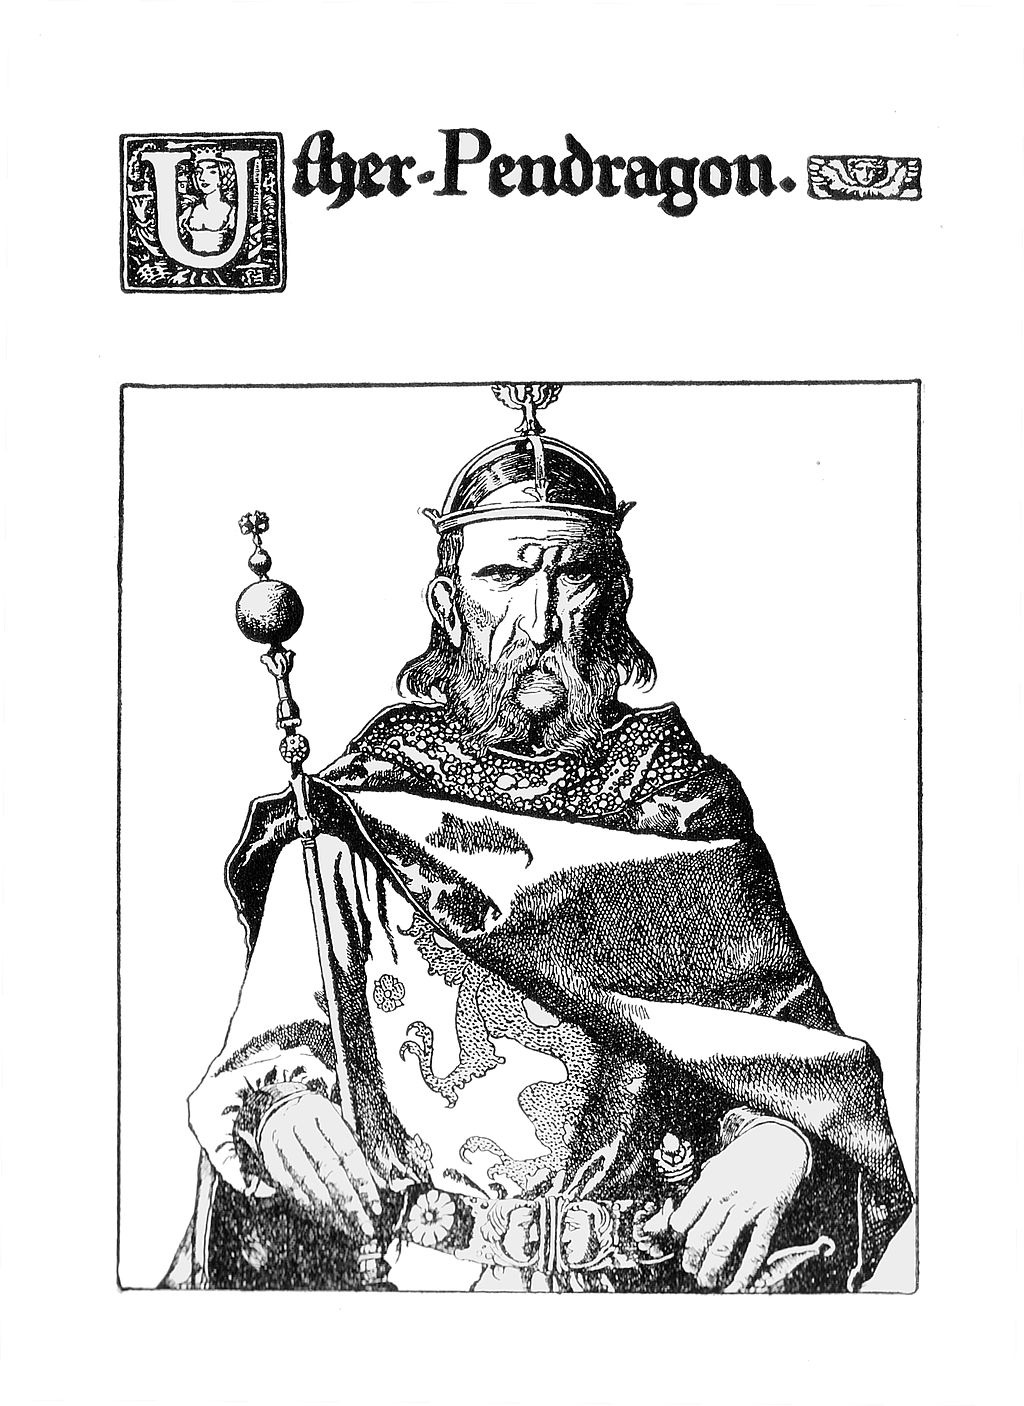 Uther Pendragon: rey y padre del rey Arturo en las Leyendas Artúricas. Uther Pendragon fue un rey de Bretaña que luchó contra los sajones y el padre del rey Arturo.Este dibujo es una ilustración de Howard Pyle (1903)